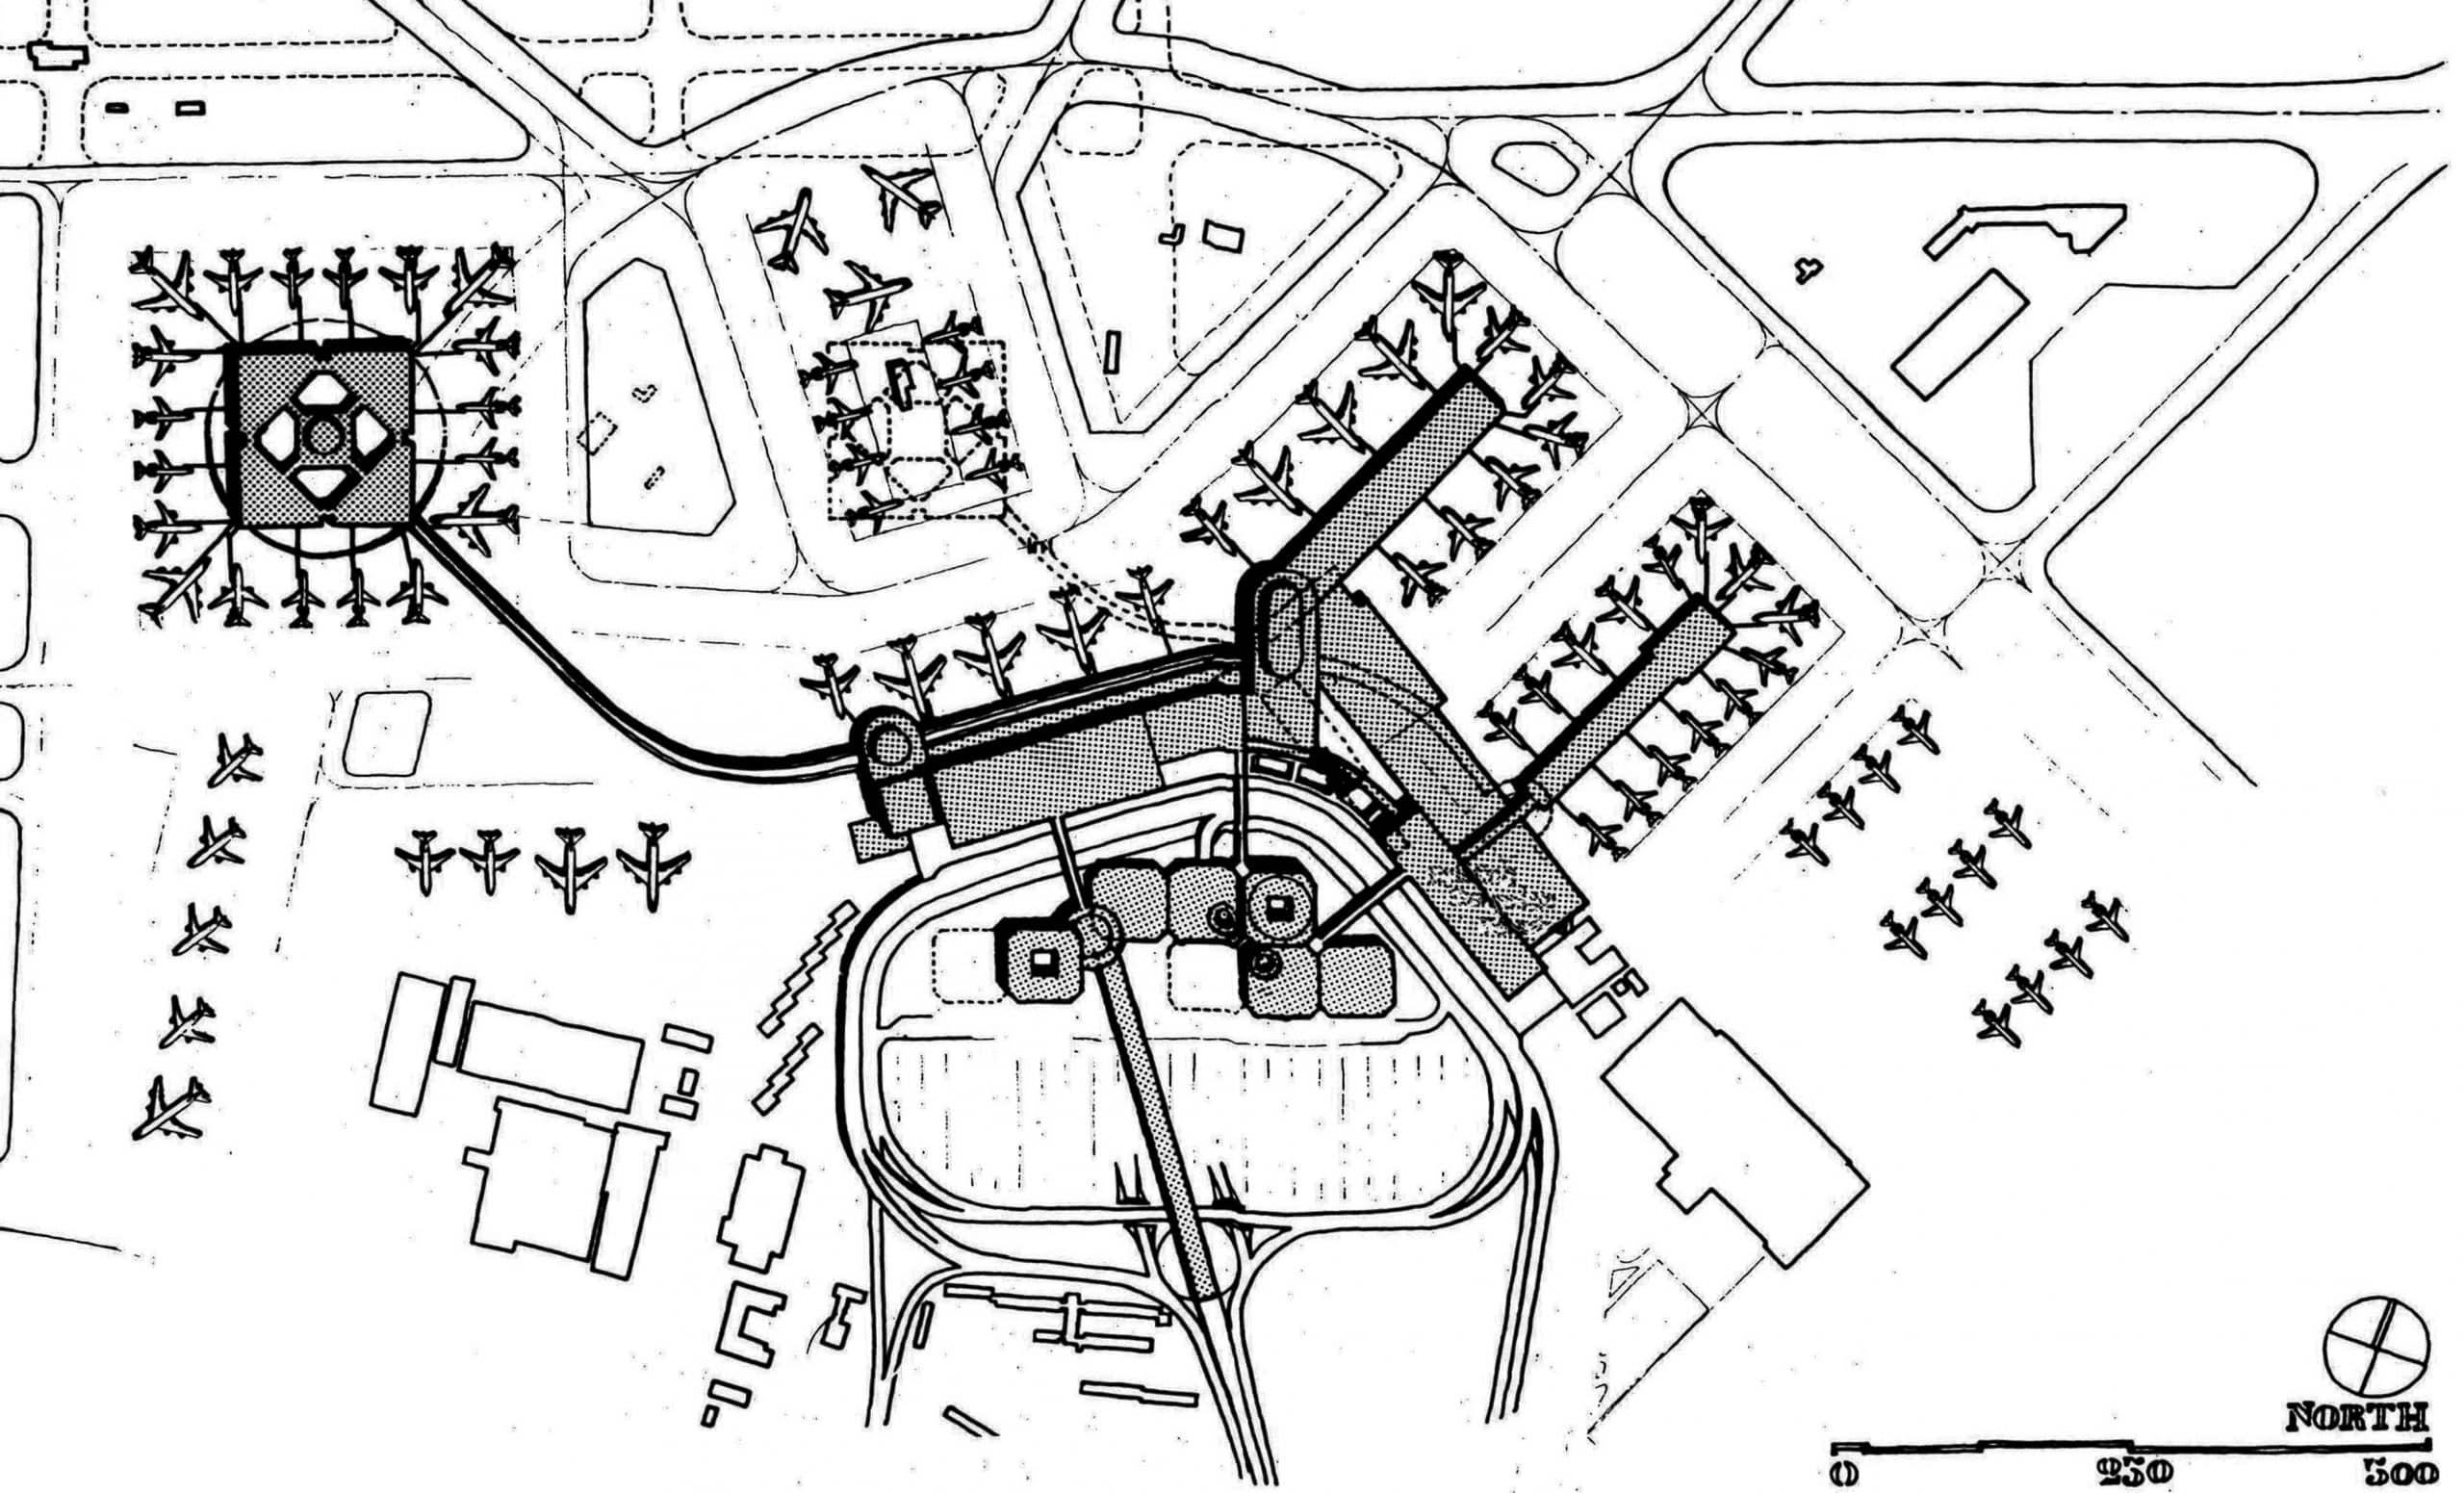 17- Aggiornamento del piano di sviluppo area centrale, Aeroporto “L. Da Vinci”, Fiumicino (RM), per ADR; con RSH (Jacksonville, Florida) - Planimetria generale